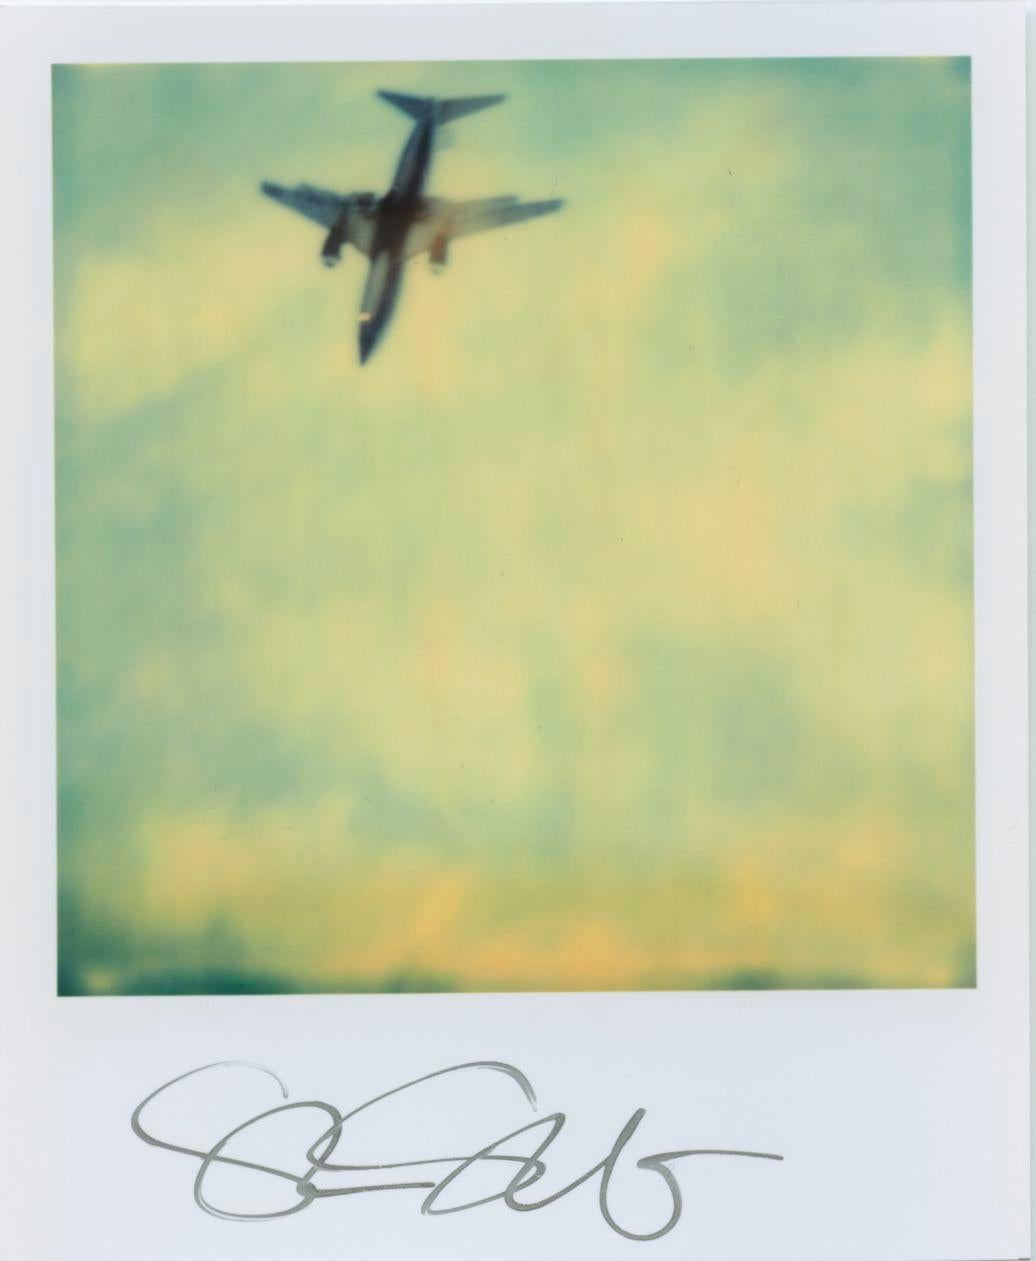 Stefanie Schneider : Mini illimité de format Polaroid 'Planes' - 2001 - - 

signé au recto, non monté. 
1 photographie numérique en couleur basée sur un polaroïd. 

Polaroid sized open Editions 1999-2016
10.7 x 8,8cm (Image 7,9x7,7cm). 

Stefanie